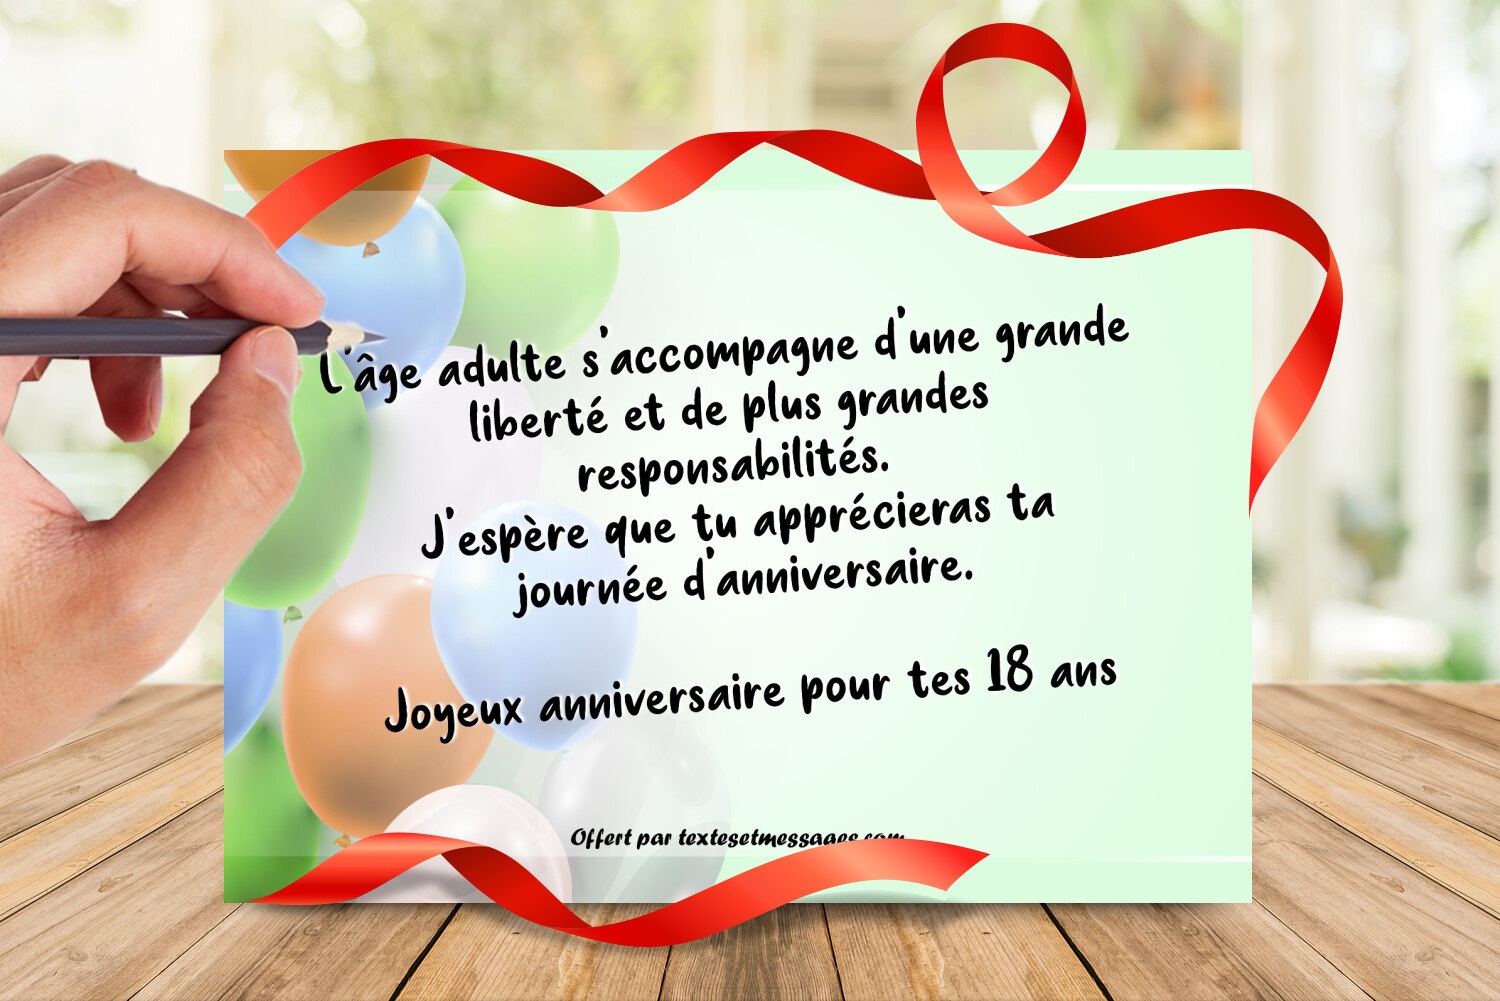 18 Ans Et Toujours Formidable: 18 Ans Joyeux Anniversaire by Anniv  Publication